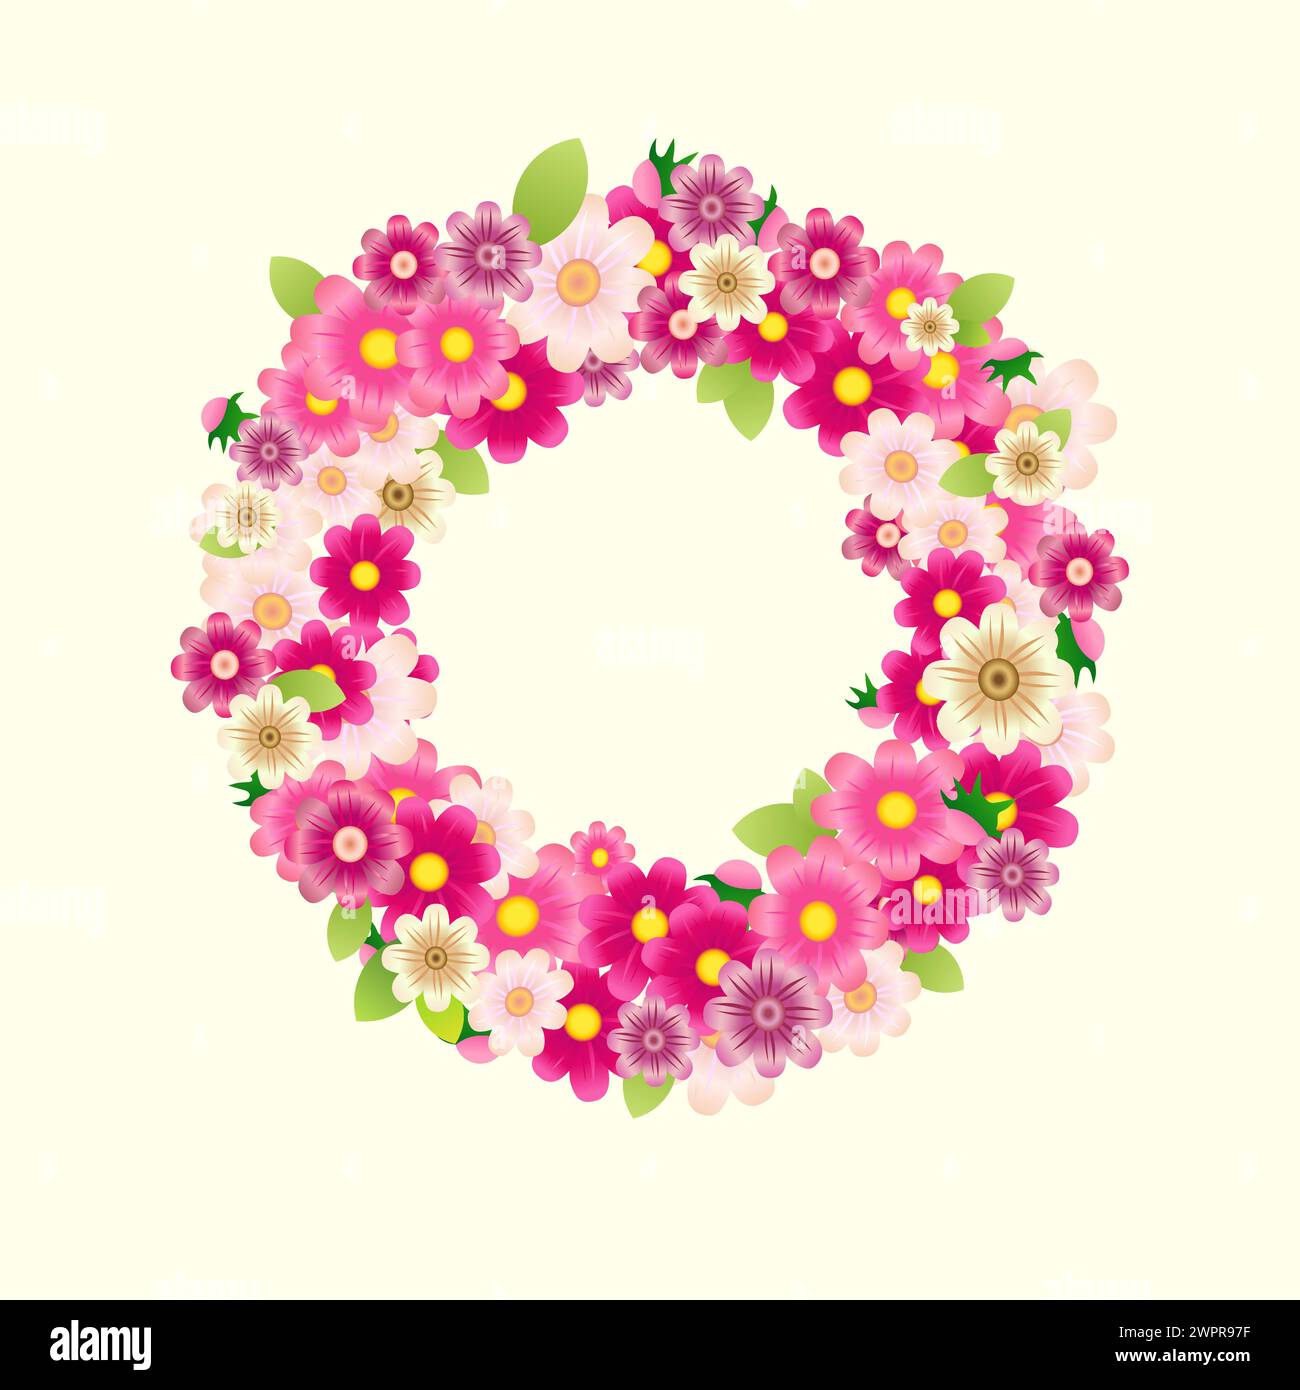 Graziosa corona floreale. Design in stile 3D. Sfondo vuoto. Decorazione delle porte. Cornice rotonda con fiori rosa e foglie verdi. Set di fiori vettoriali. Illustrazione Vettoriale